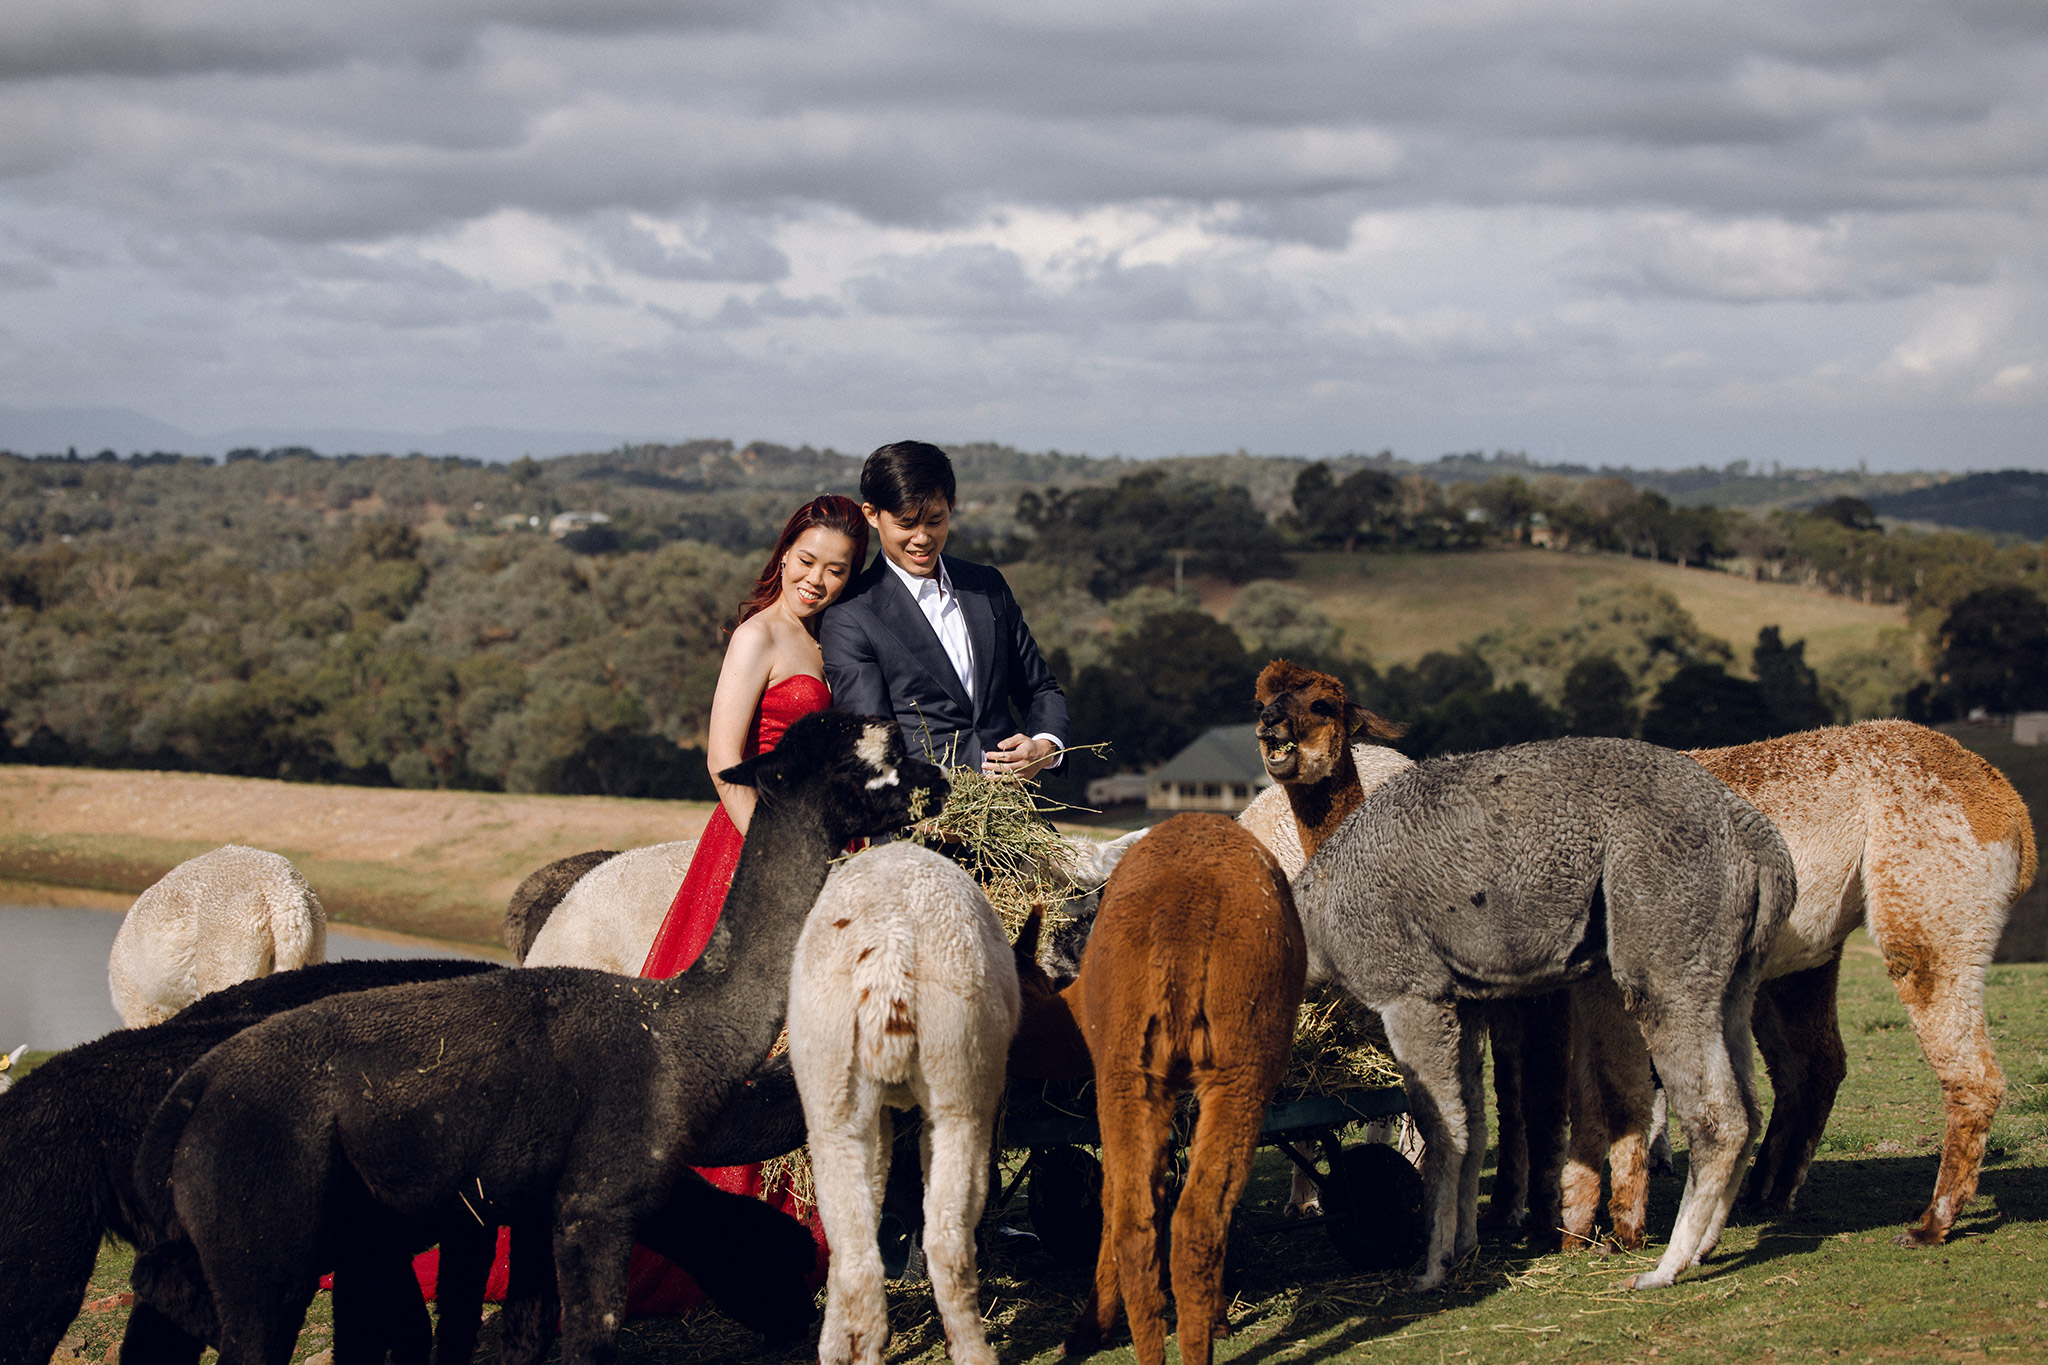 Melbourne Pre-Wedding Photoshoot at Alpaca Farm, Fitzroy Gardens & Brighton Beach by Freddie on OneThreeOneFour 2